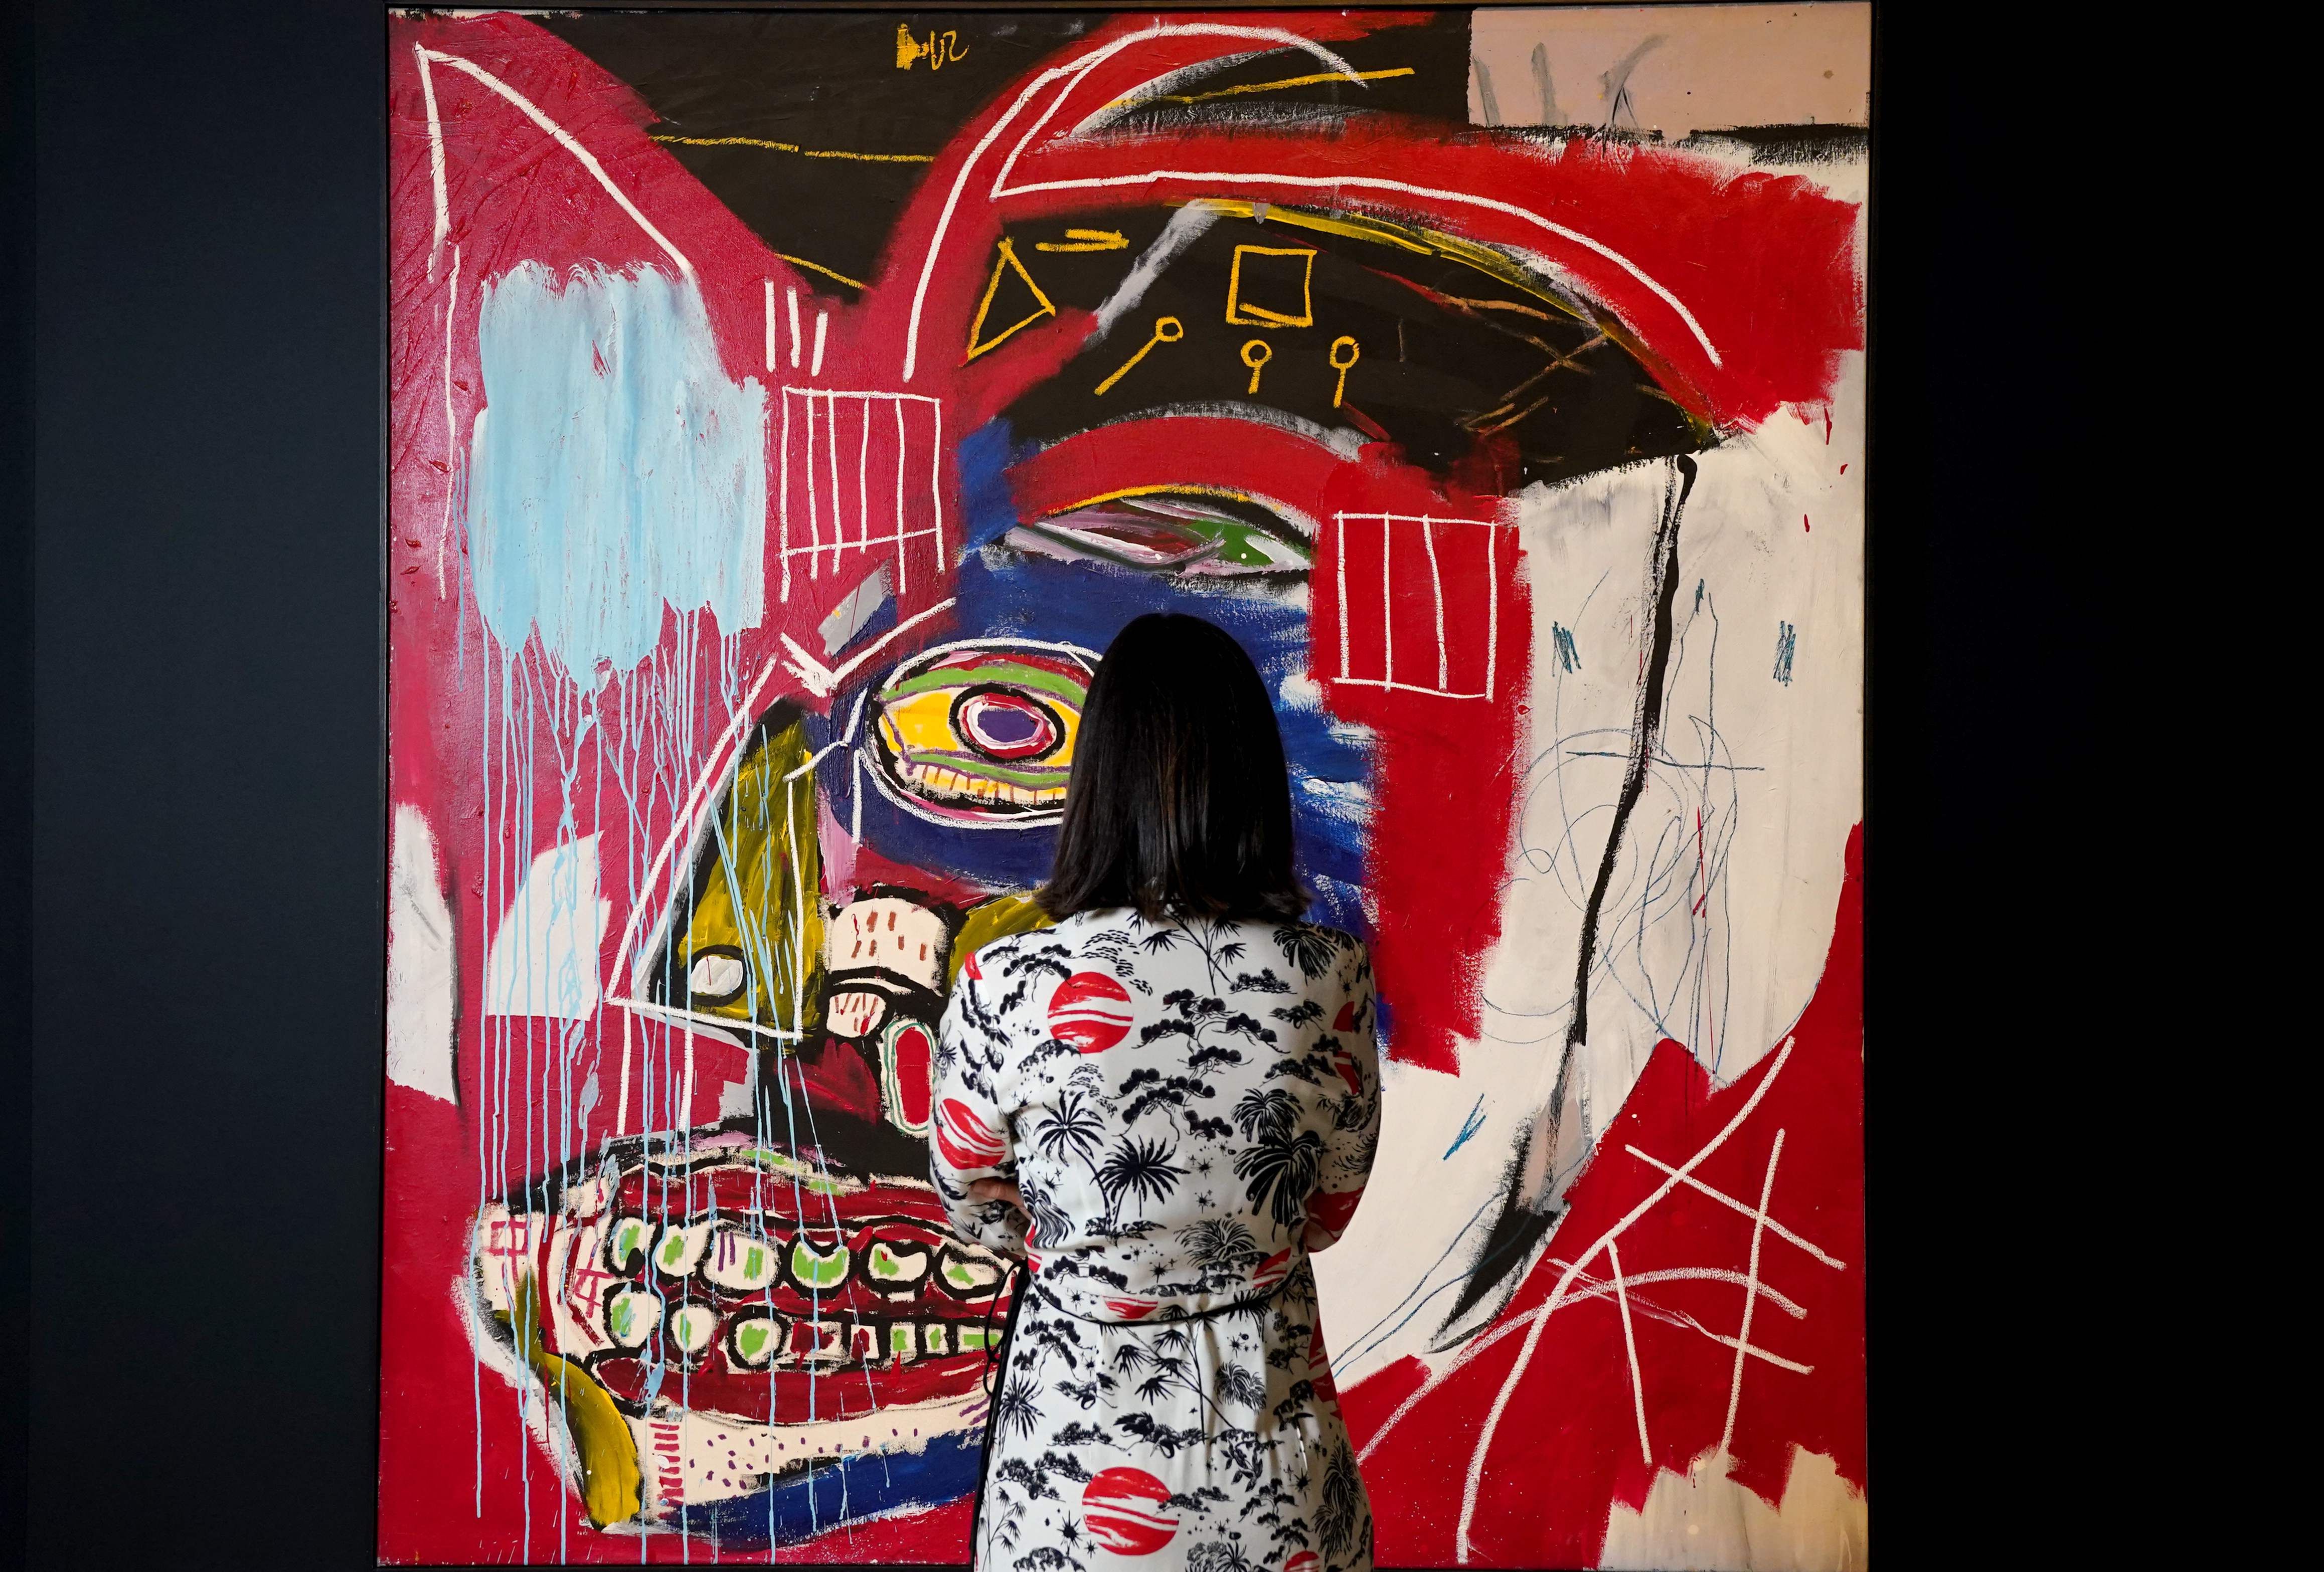 Una mujer contempla 'In this case', la obra de Basquiat suabastada este martes en Nueva York.